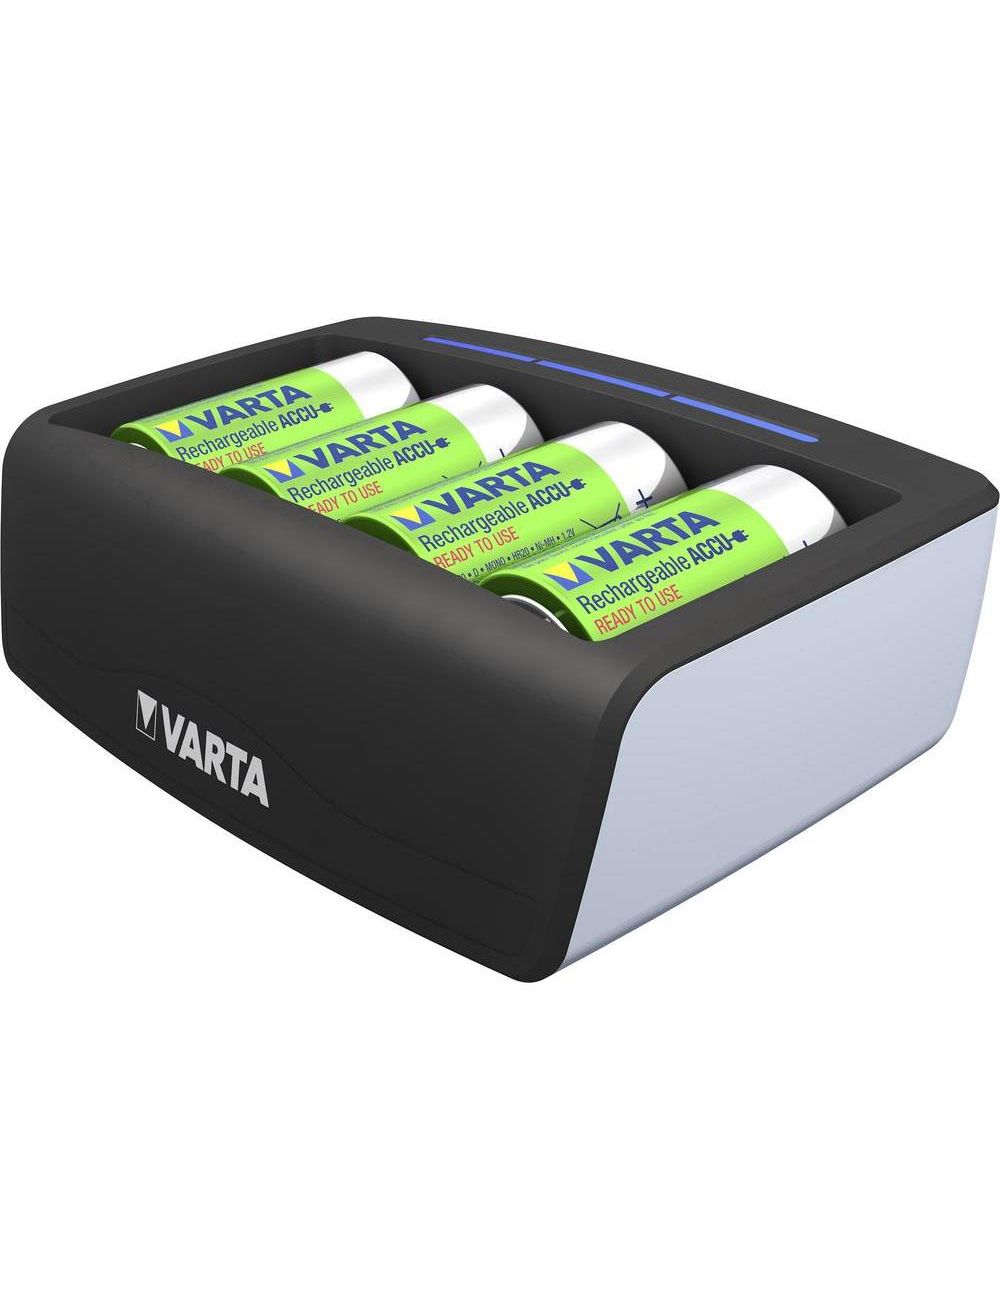 Cargador para pilas AAA, AA, C, D y 9V recargables Varta